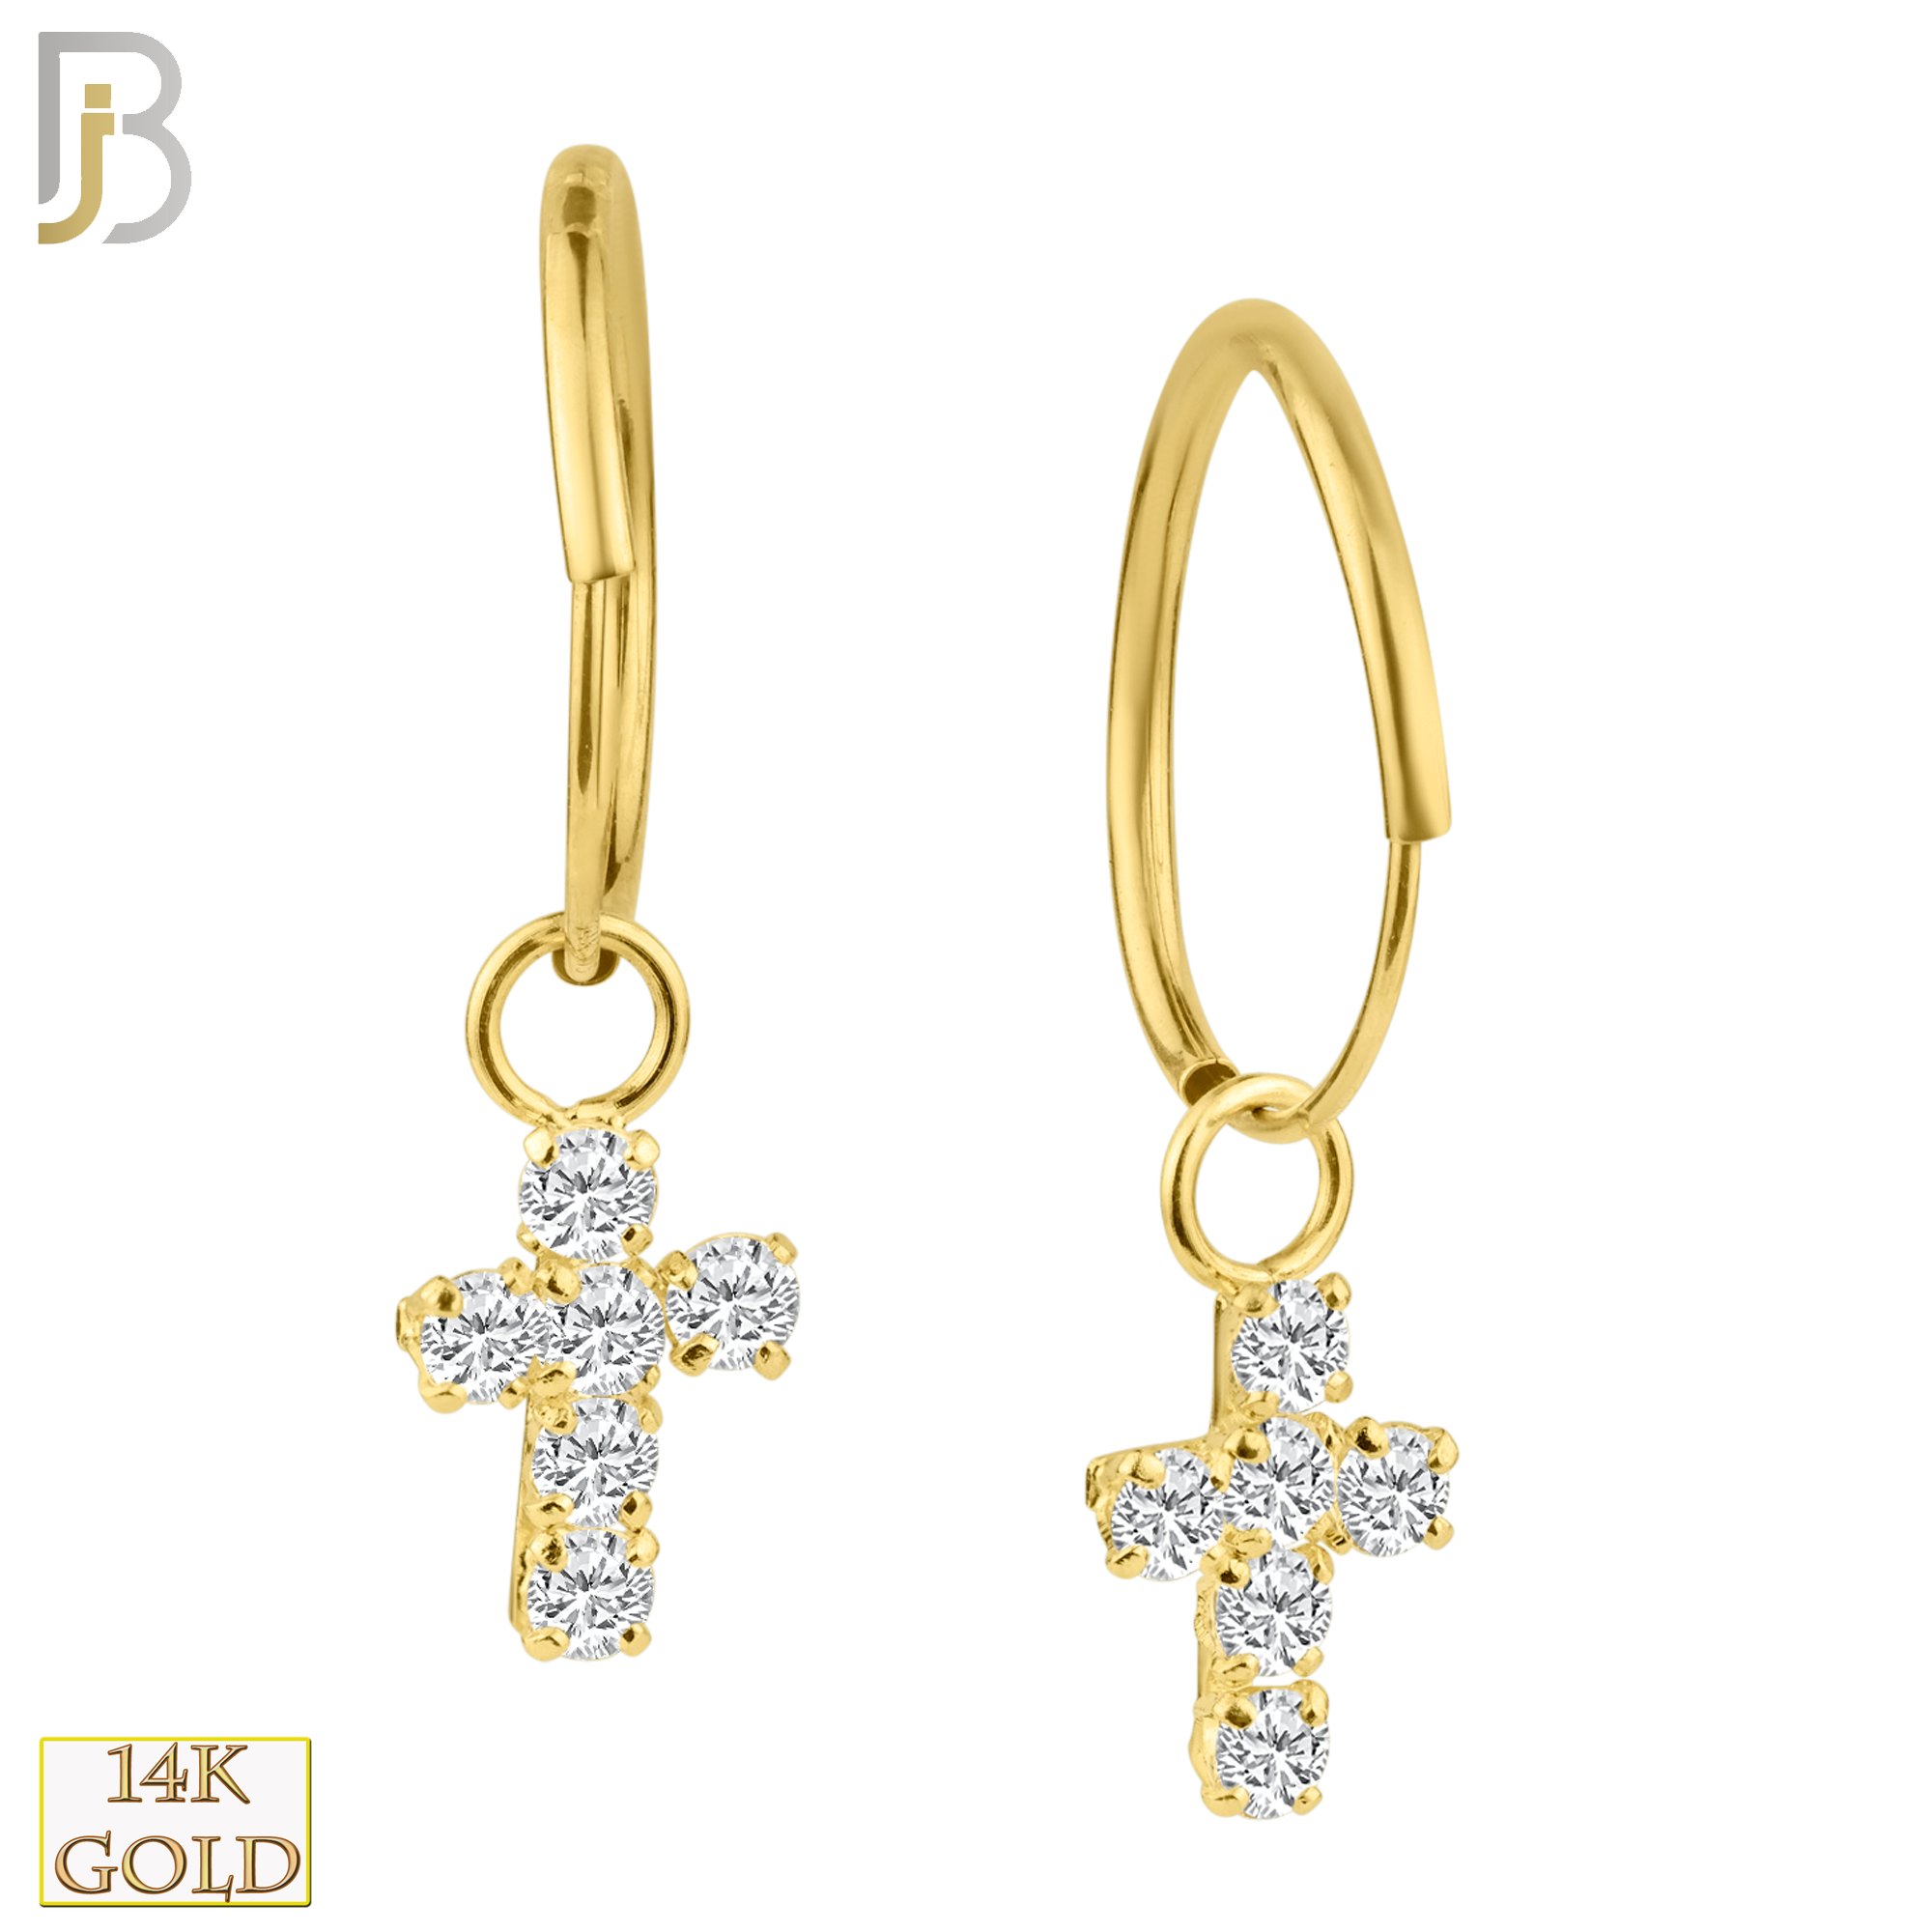 14k Solid Gold Dangling Cross with CZ Stones Hoop Earrings | Body Jewelz